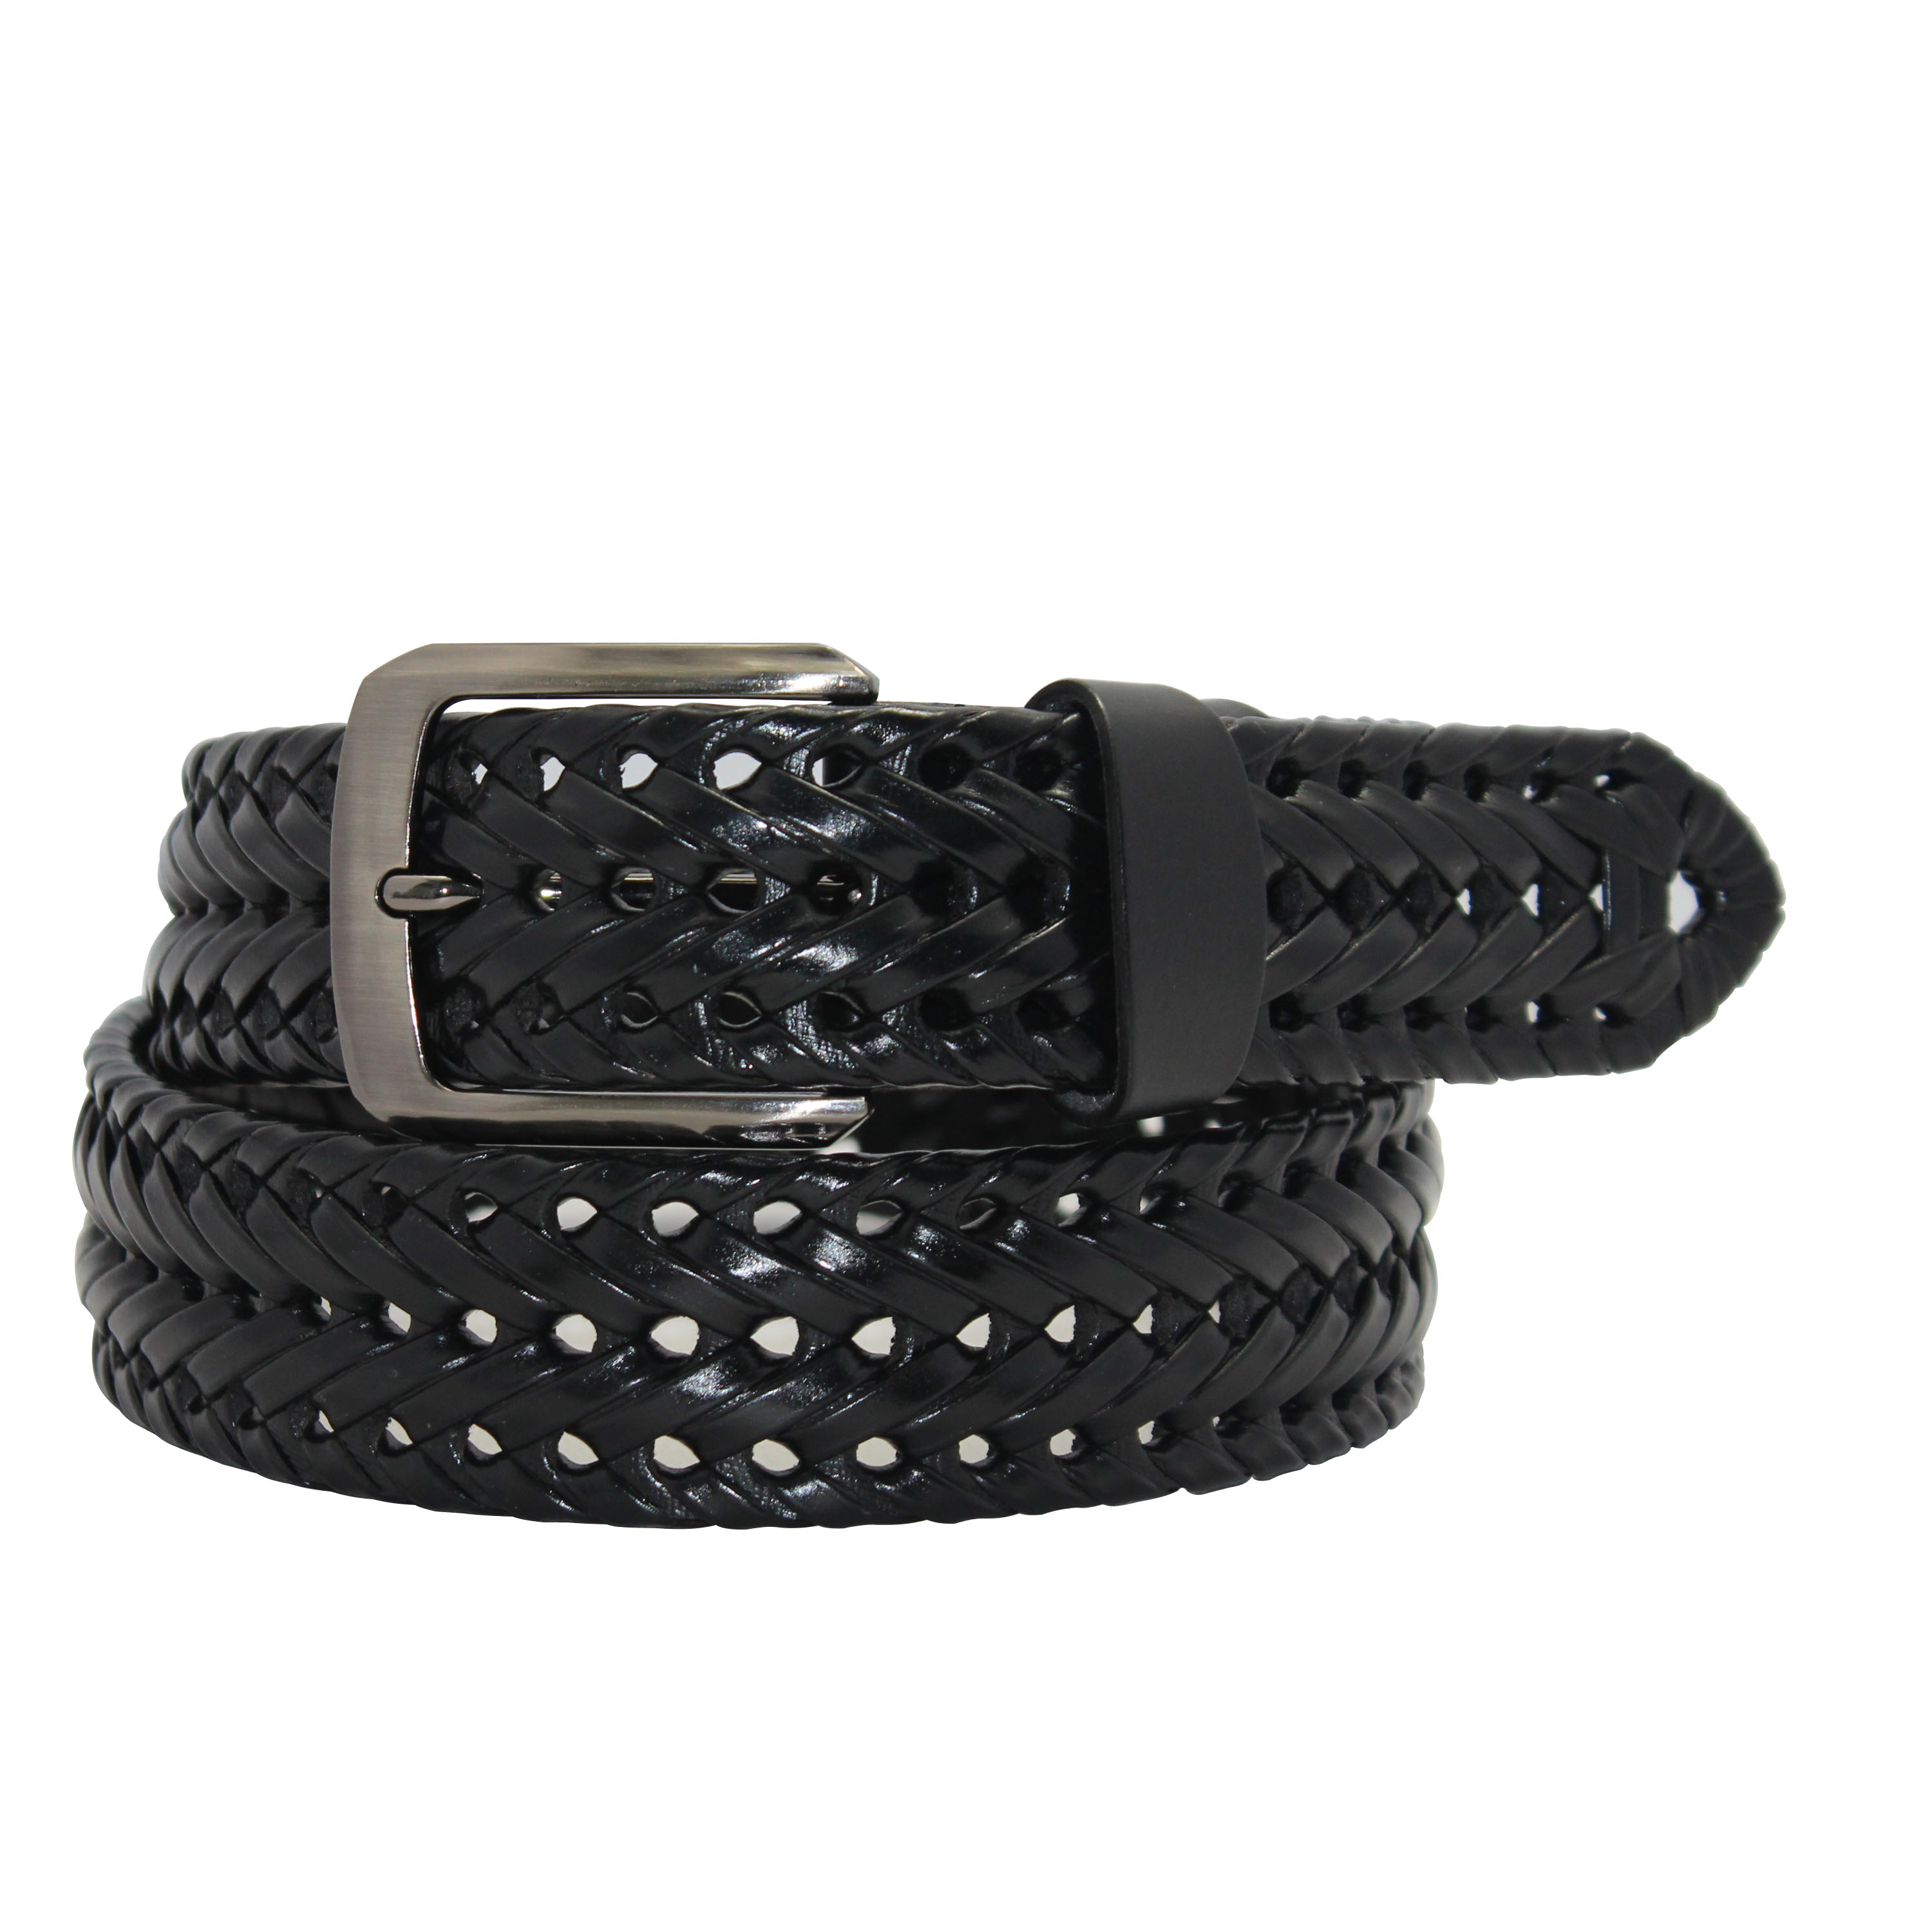 :Sleek and modern braided belt for men with discerning taste 35-23418